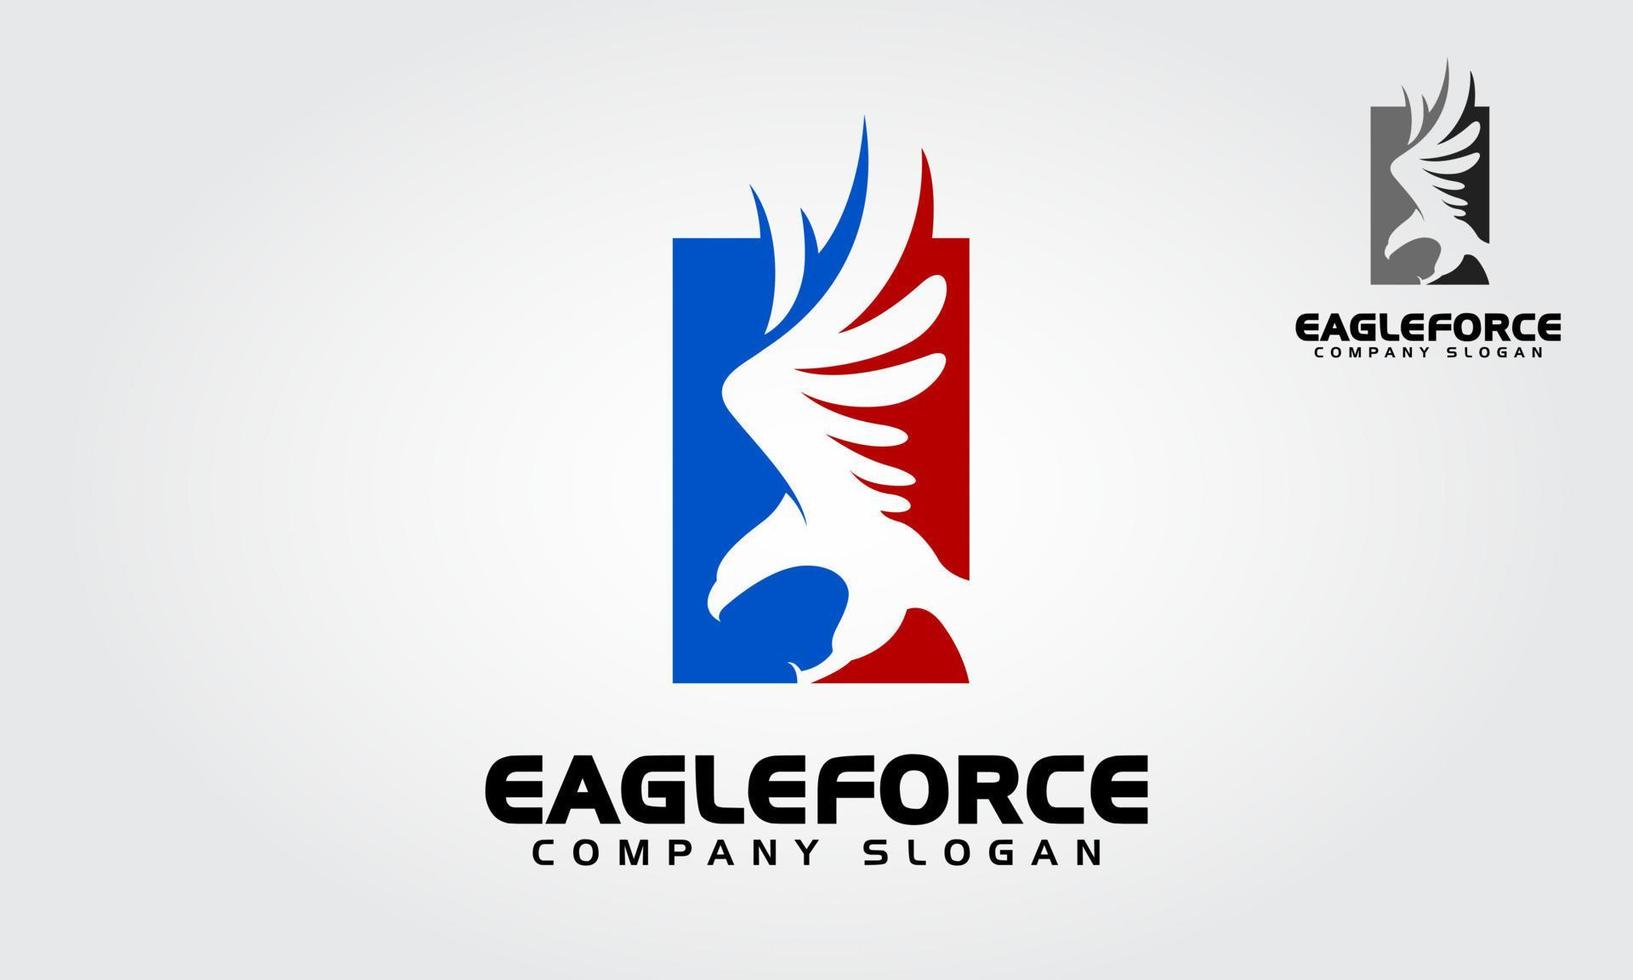 águila fuerza vector vector logo ilustración. Plantillas de logotipo de American Eagle Force, una excelente plantilla de logotipo.